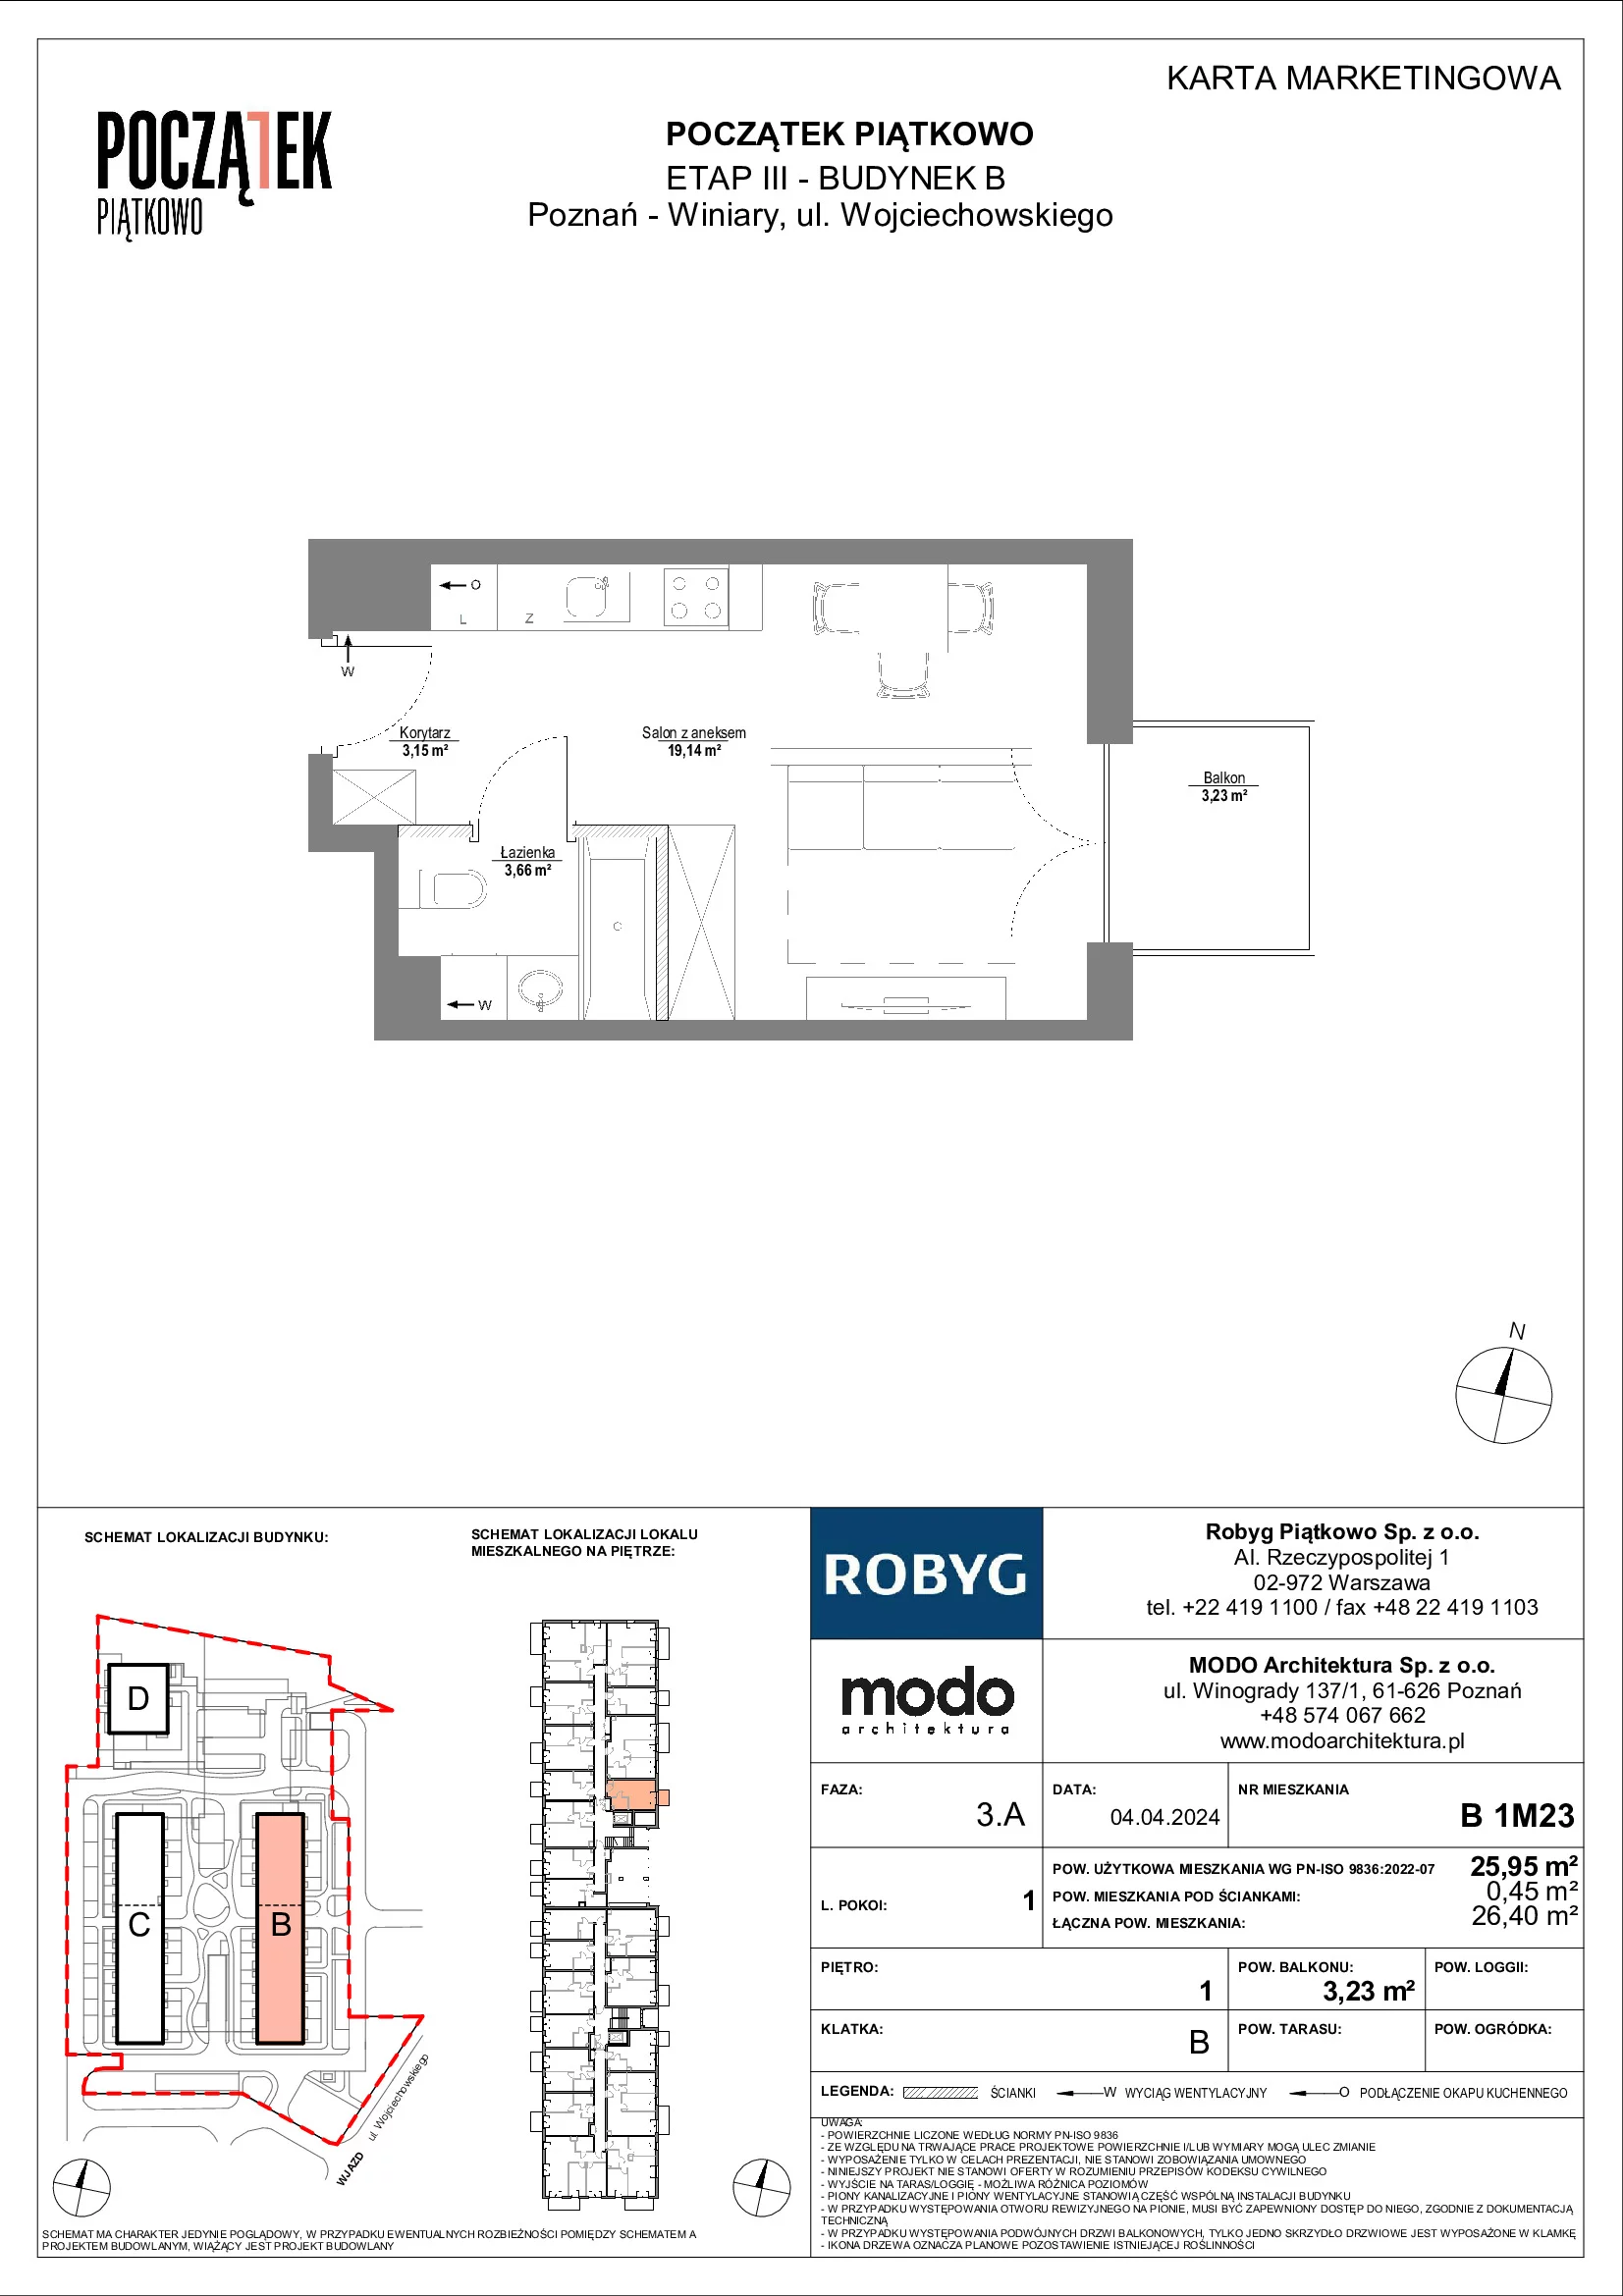 Mieszkanie 25,95 m², piętro 1, oferta nr B.1M23, Początek Piątkowo, Poznań, Piątkowo, ul. Wojciechowskiego